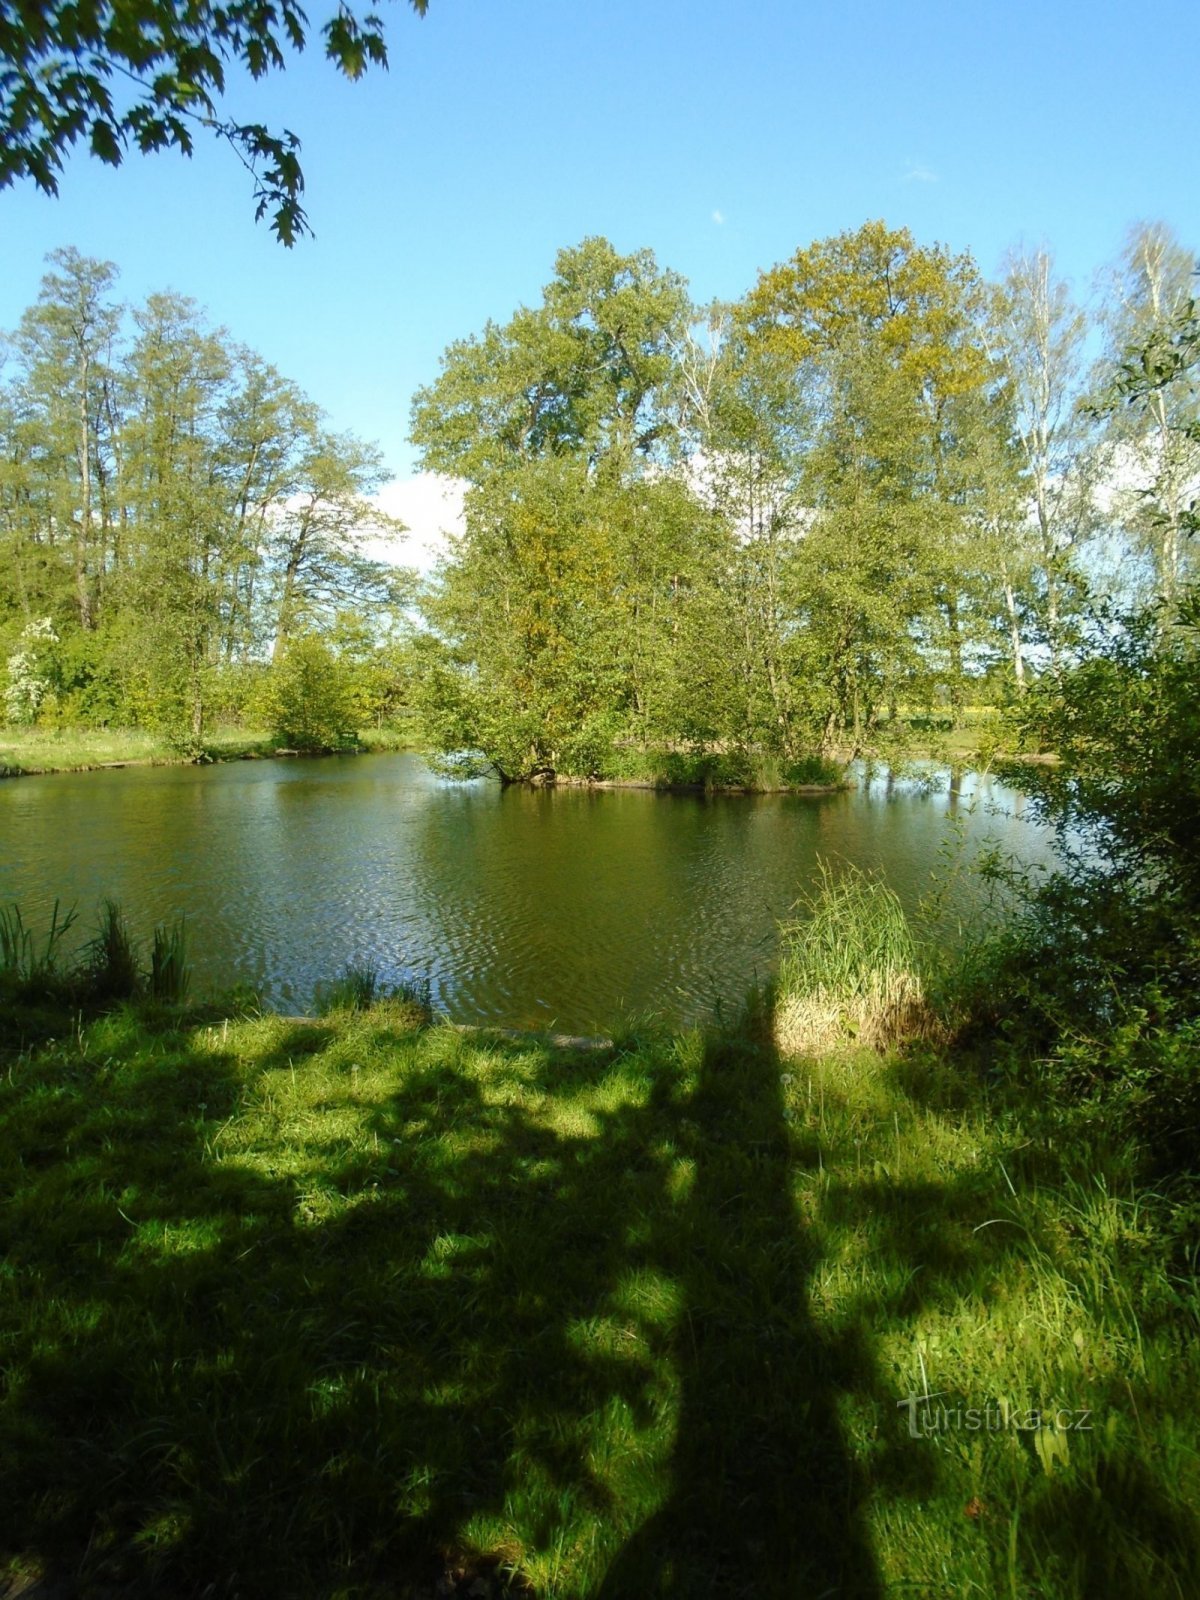 Δημοτική λίμνη στο Věkošy (Hradec Králové, 14.5.2019/XNUMX/XNUMX)